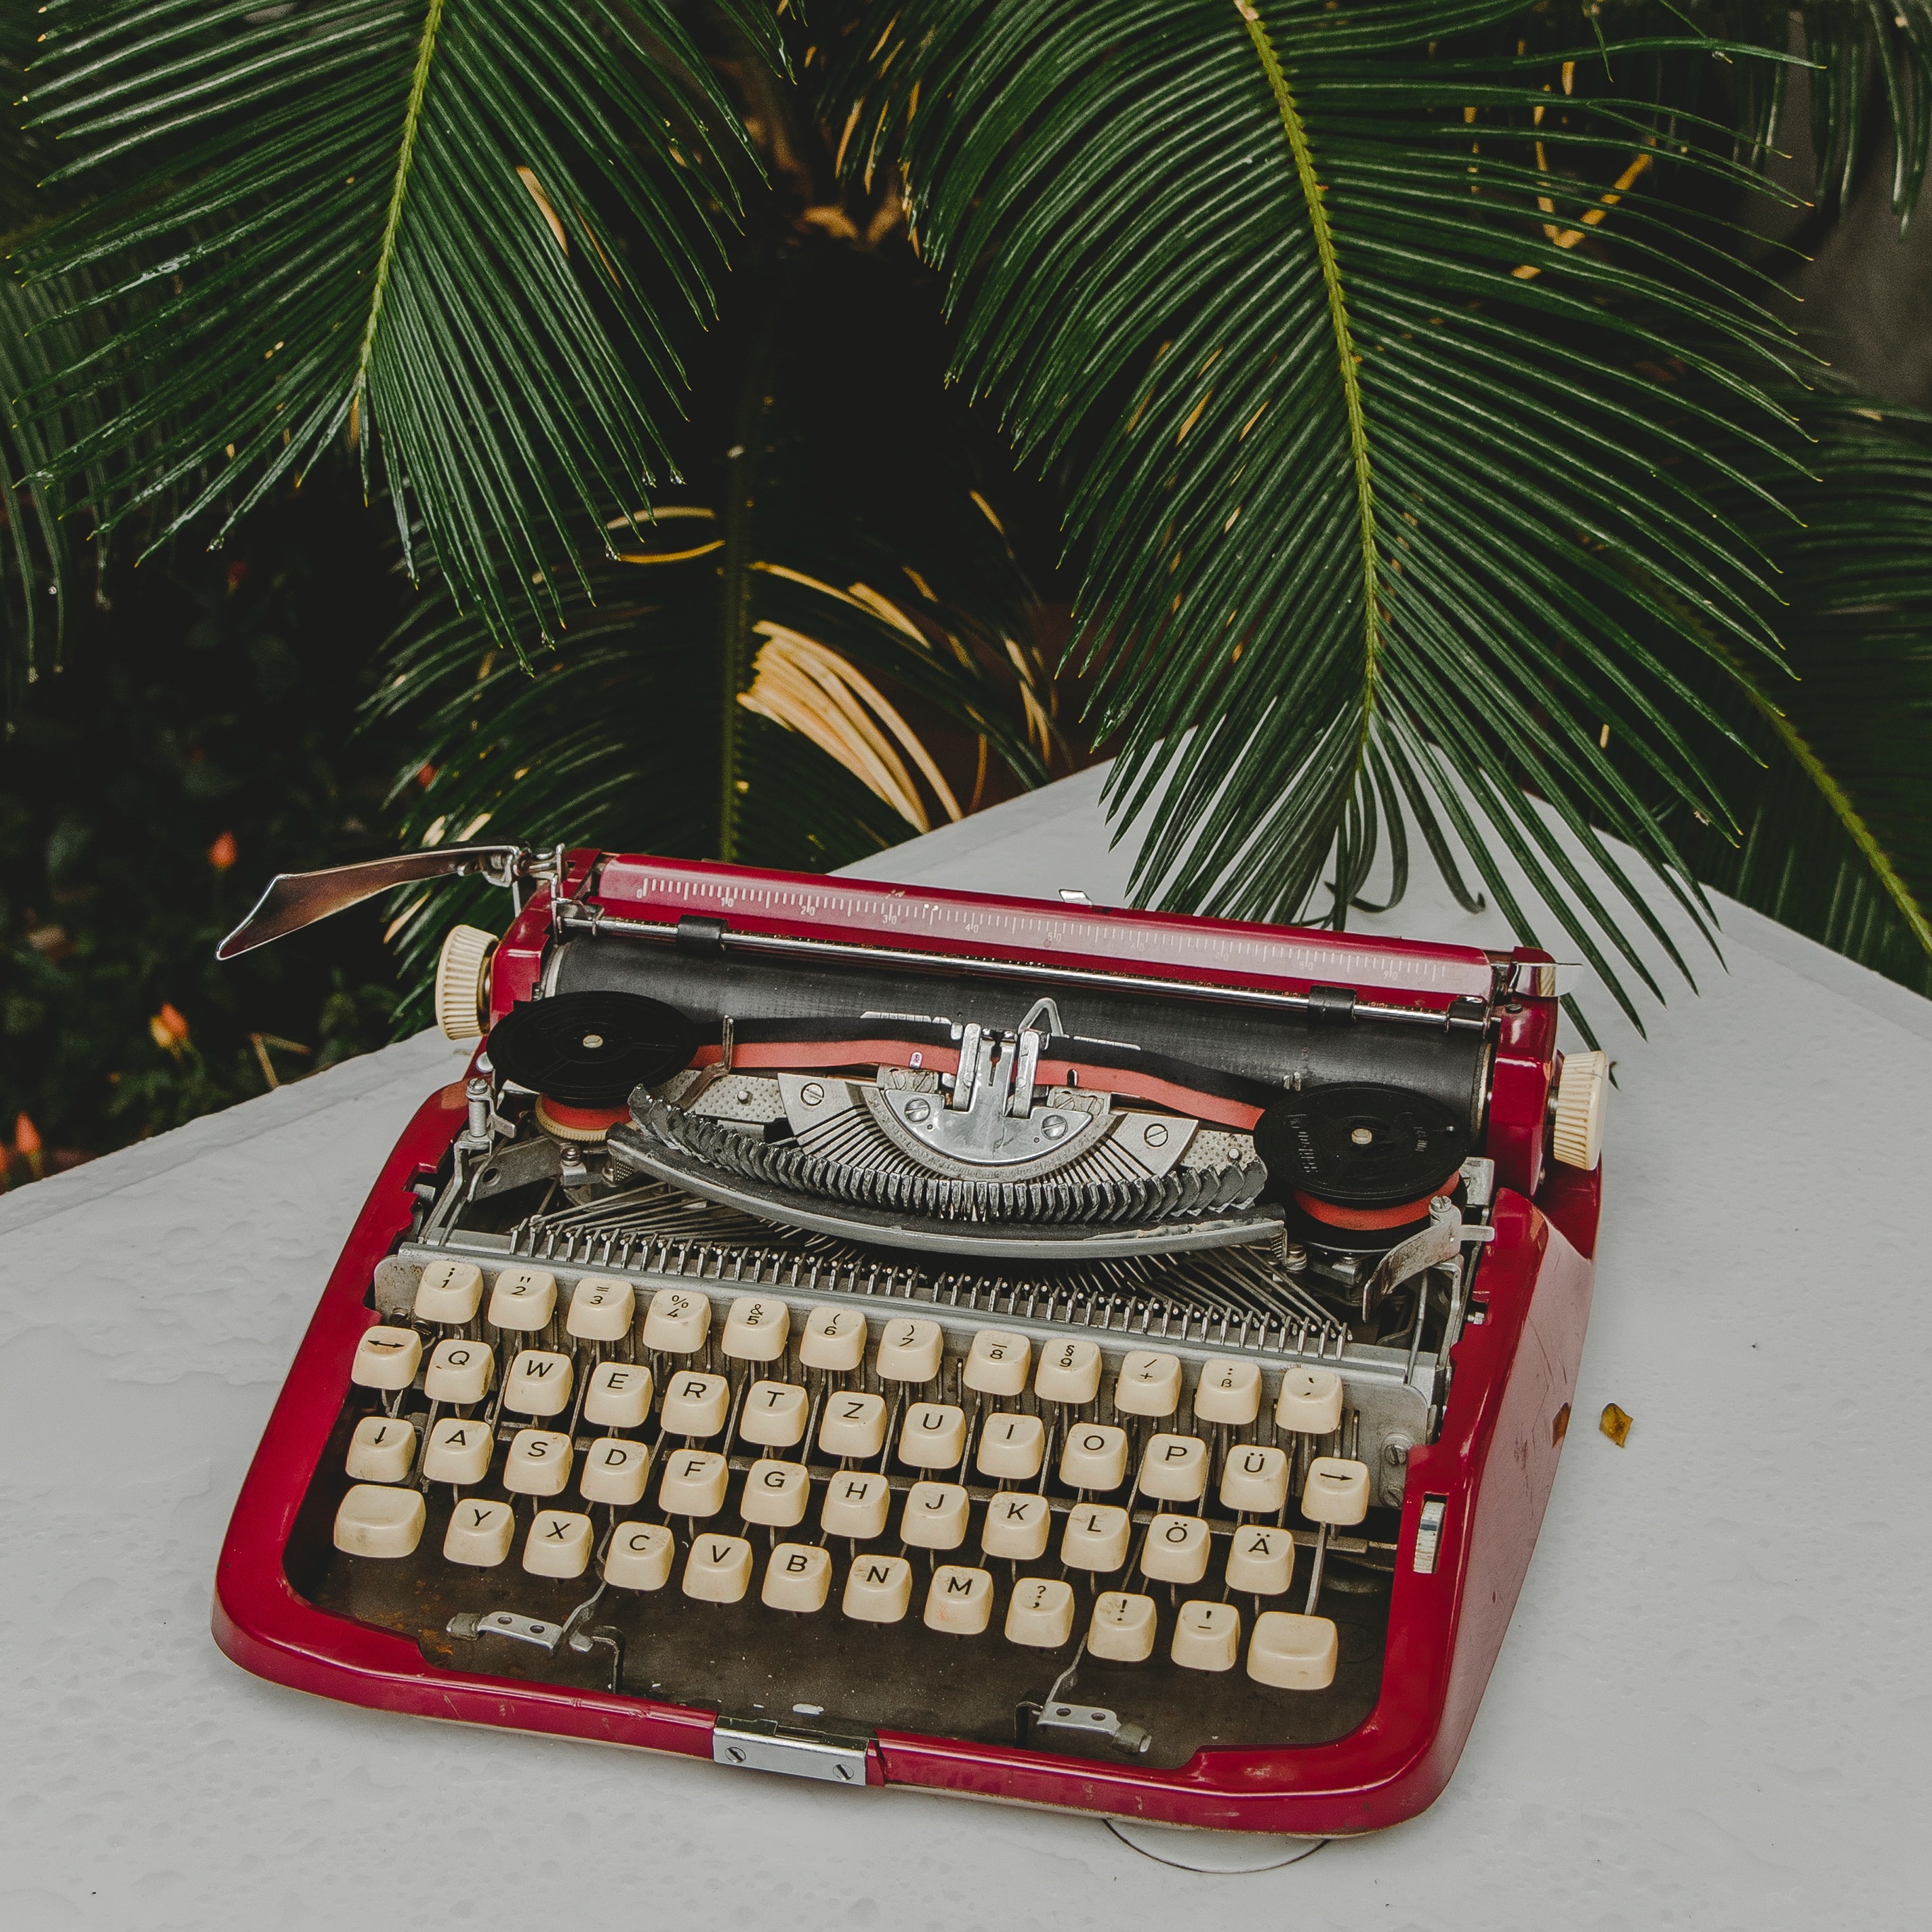 Red typewriter